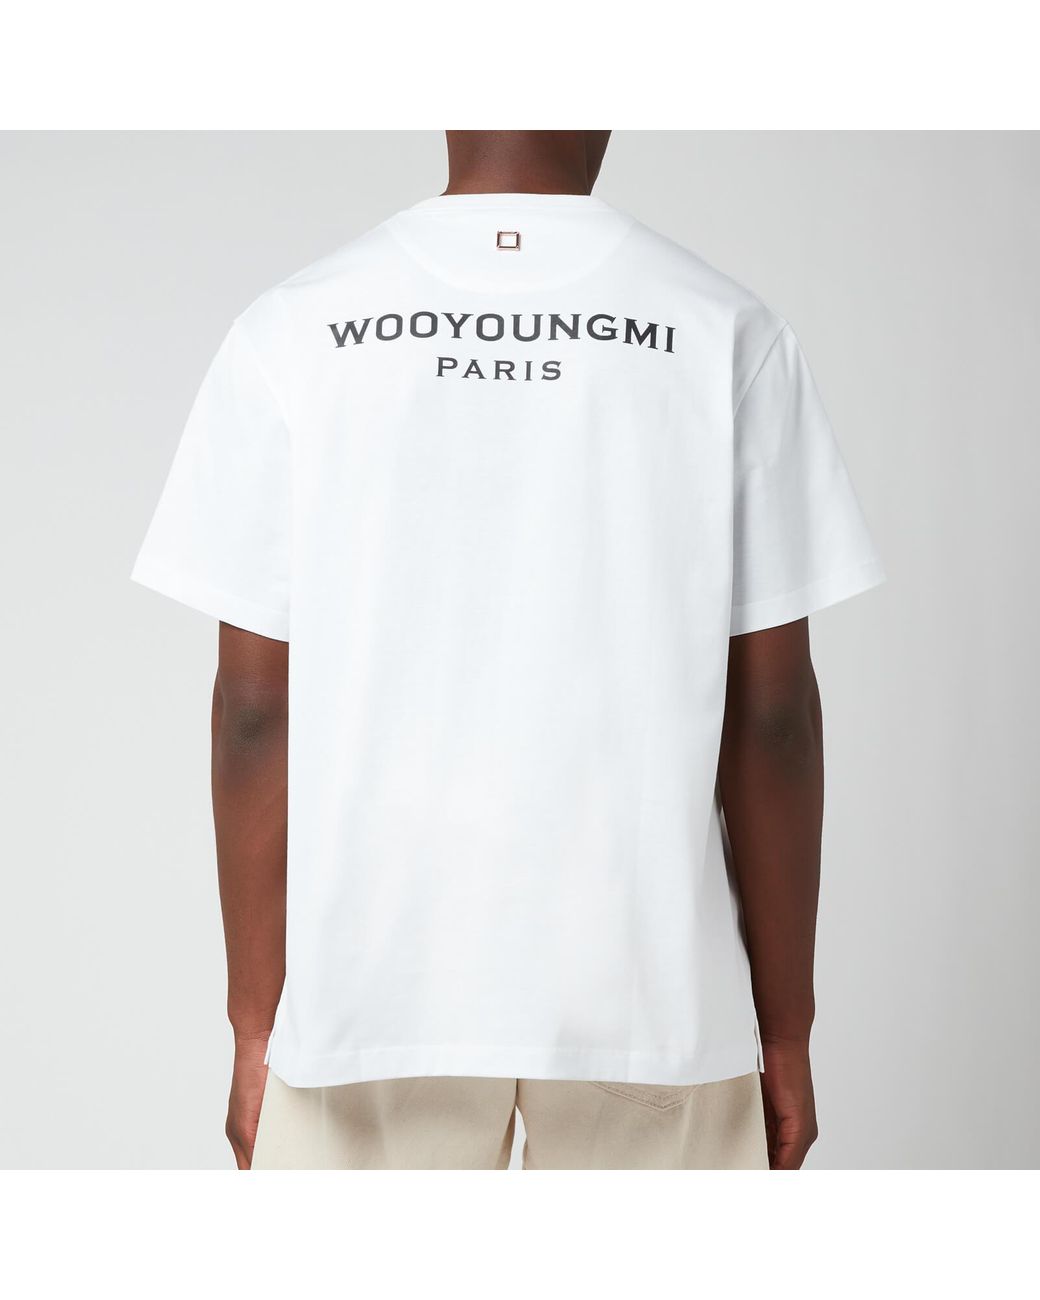 期間限定特価 WOO YOUNG MI - WOOYOUNGMI PARIS ロゴTEEの通販 by